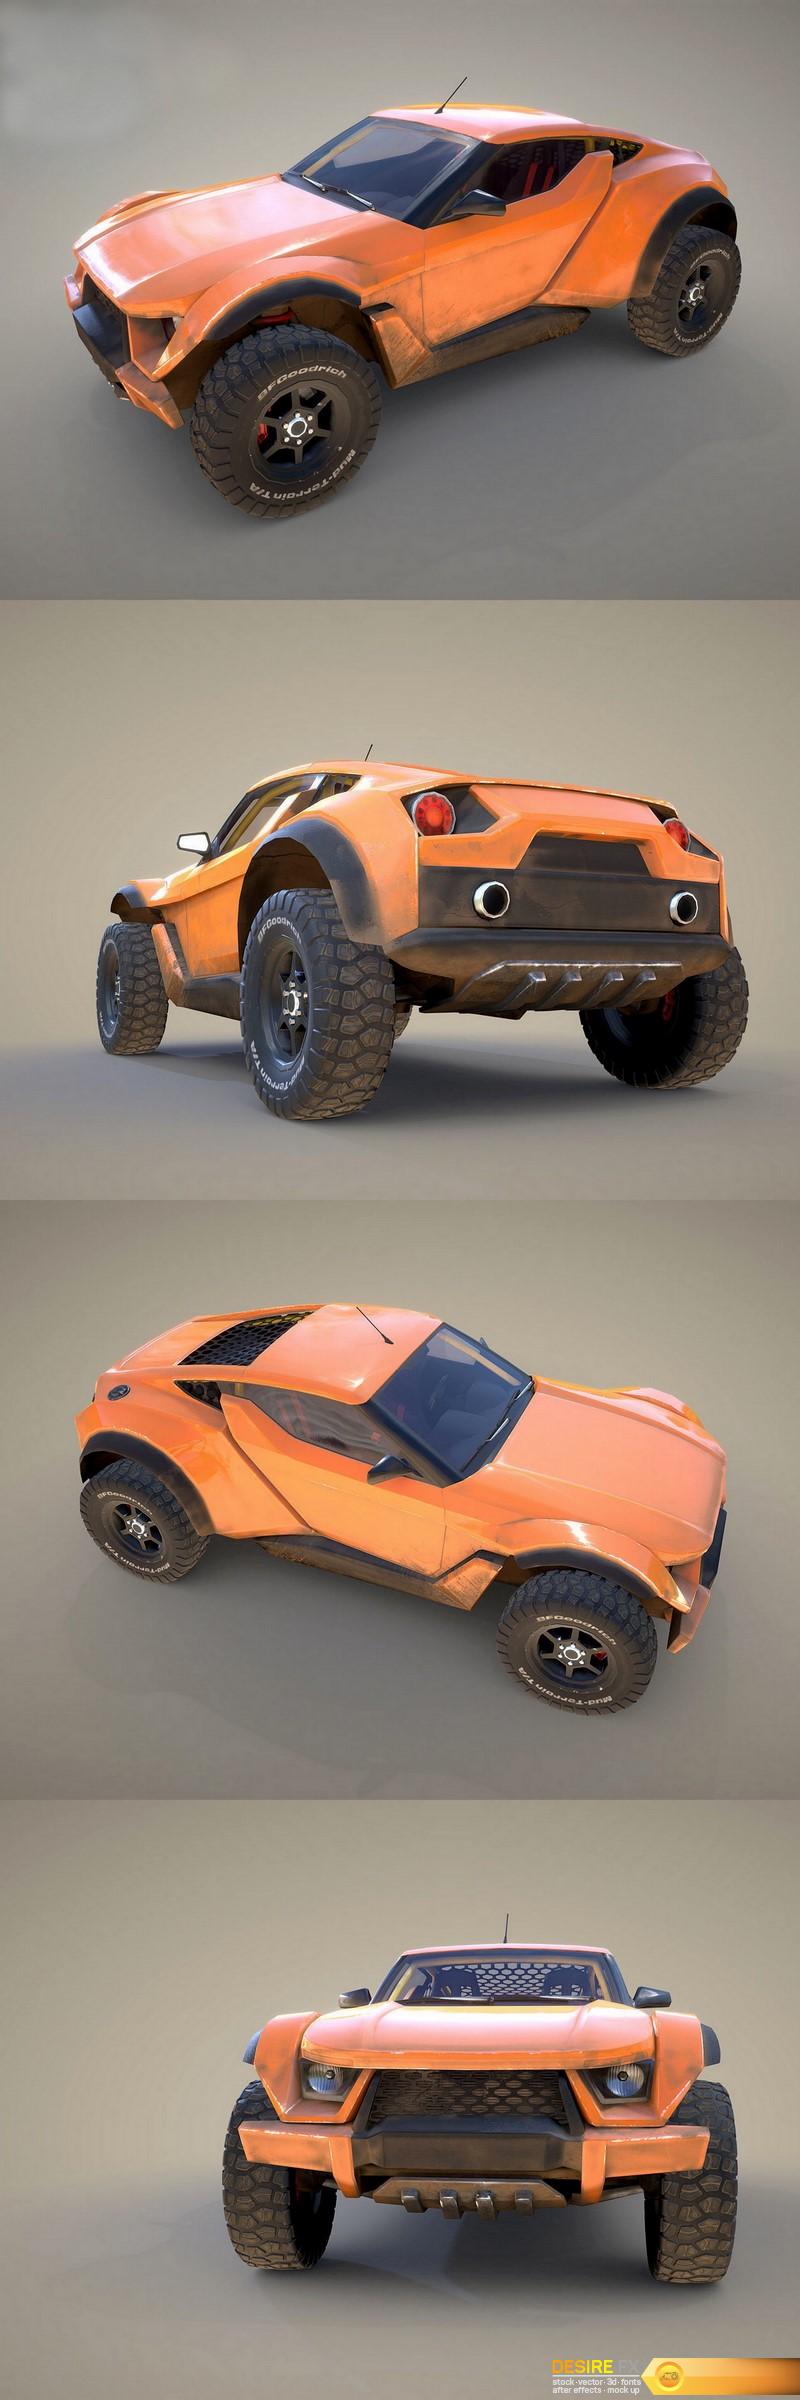 Zarooq Sand Racer越野超级跑车3D模型 Zarooq Sand Racer Off Road Supercar 3D Model插图